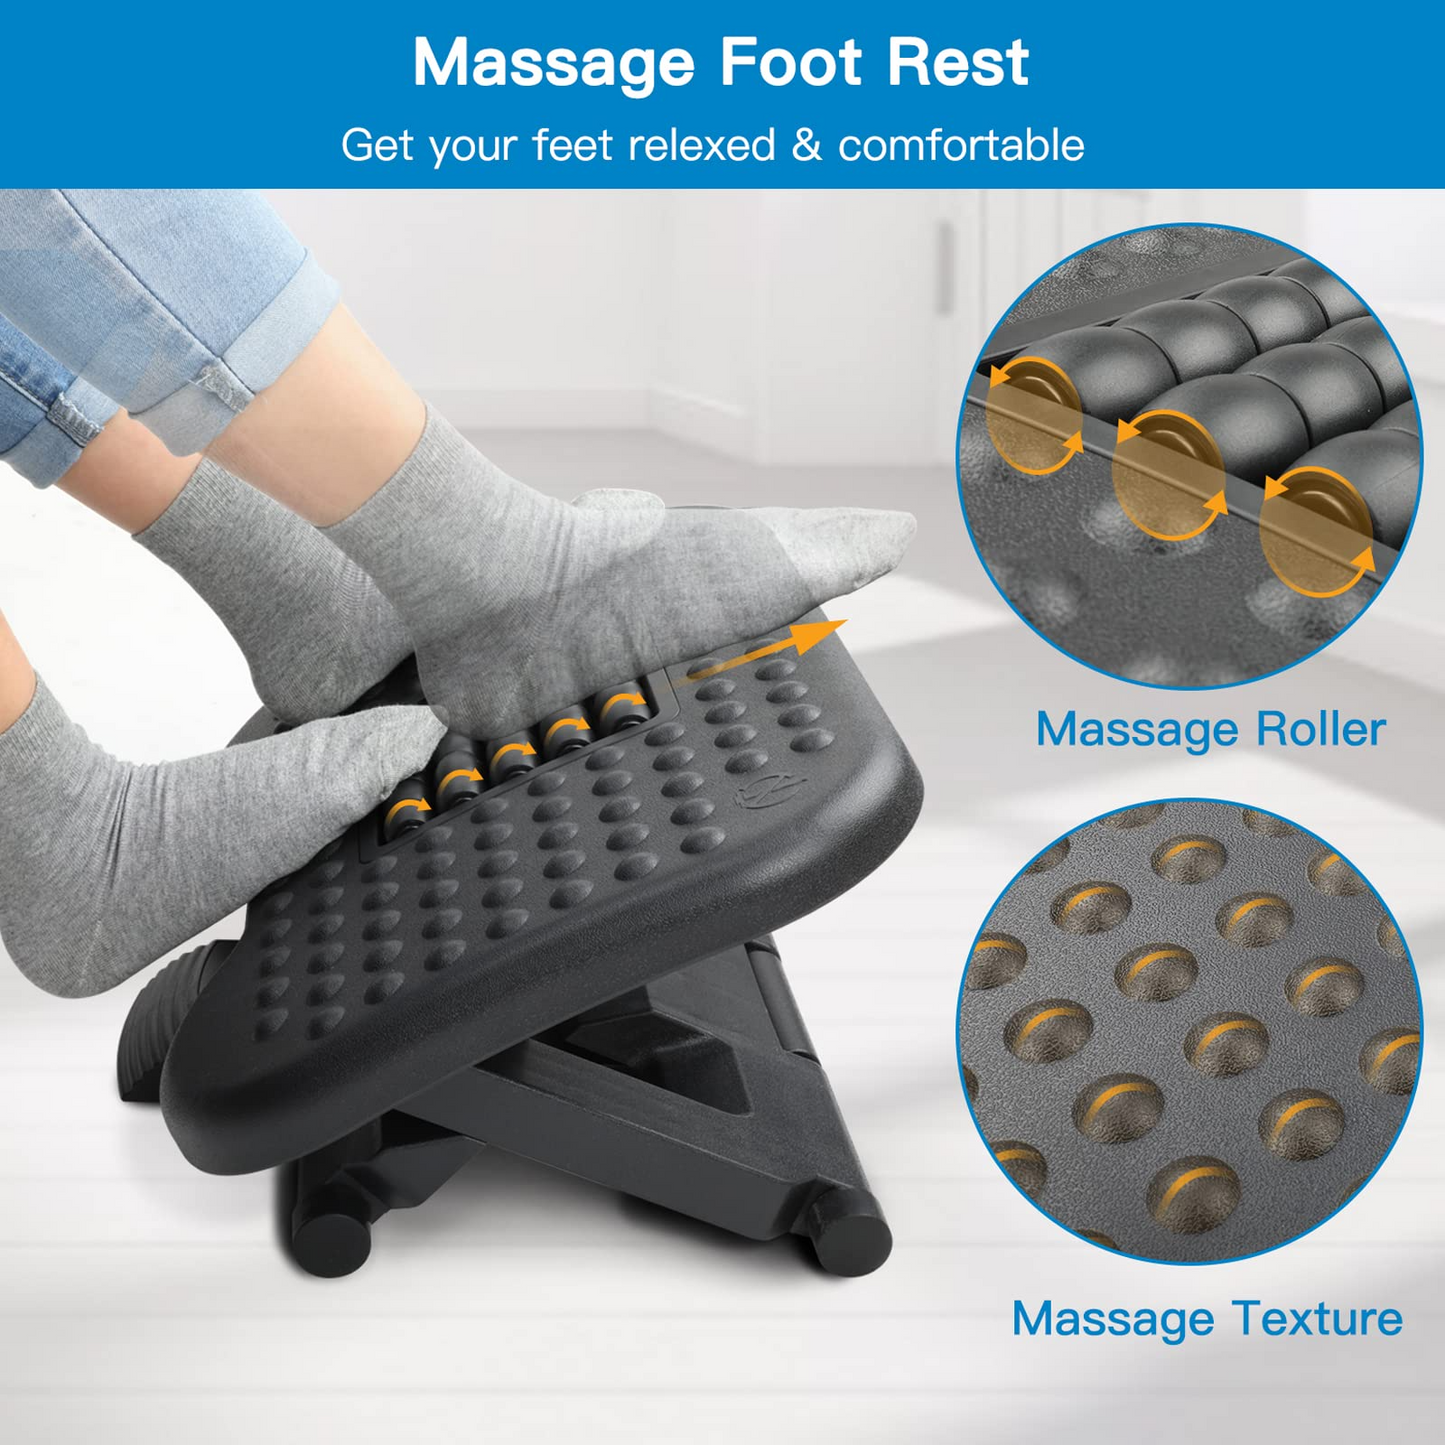 Adjustable Under Desk Footrest, Ergonomic Foot Rest with Massage